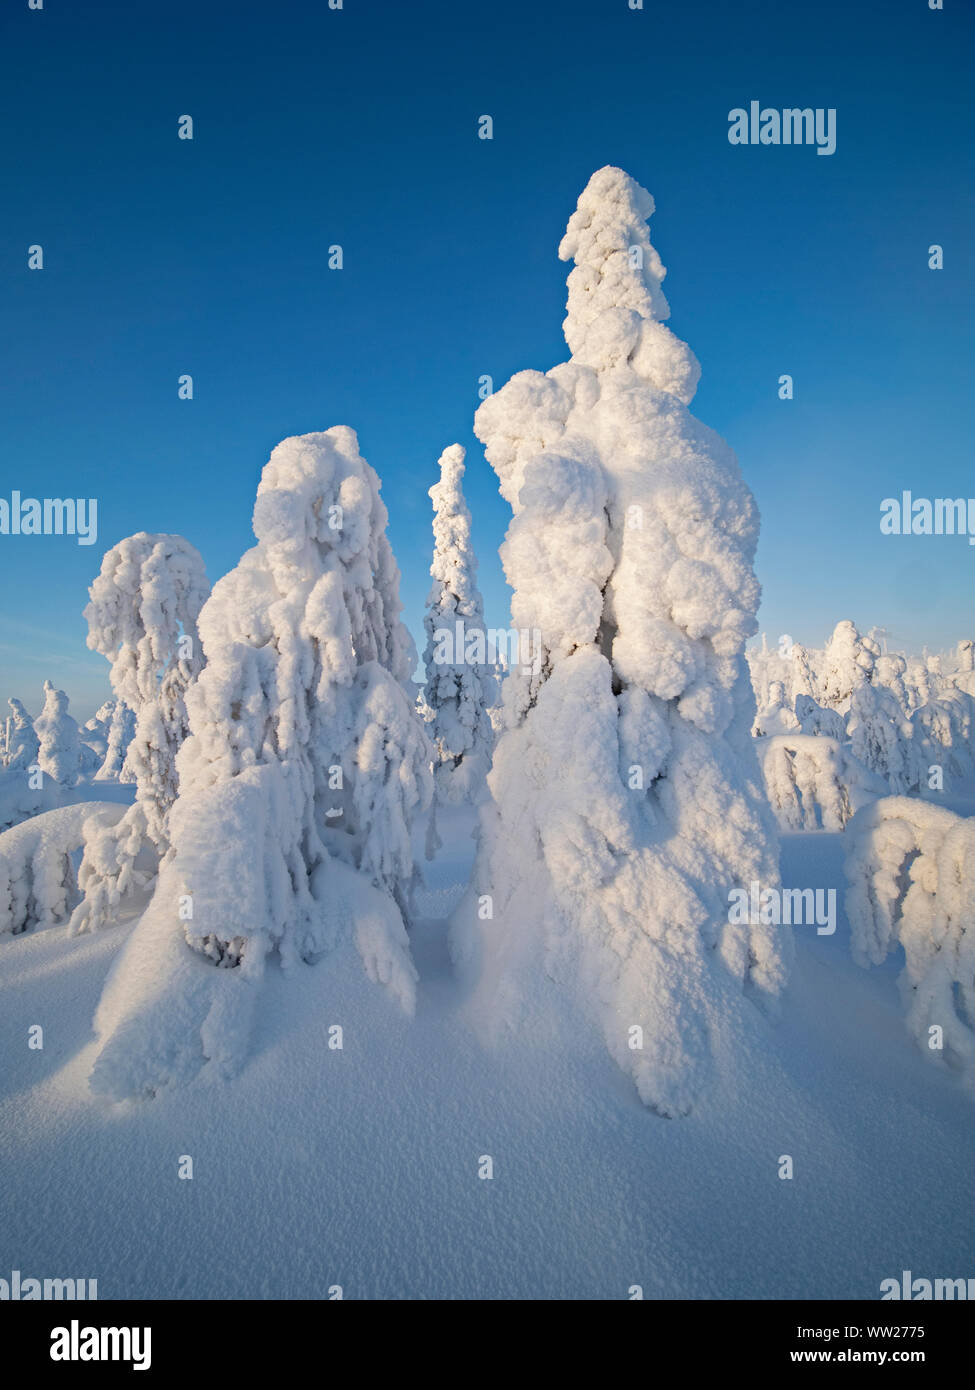 Abeti ammantato di neve picco Ruka Kuusamo Finlandia gennaio. Quando la neve mantelli di abeti come questo è noto come la neve di corona e può mettere un carico Foto Stock